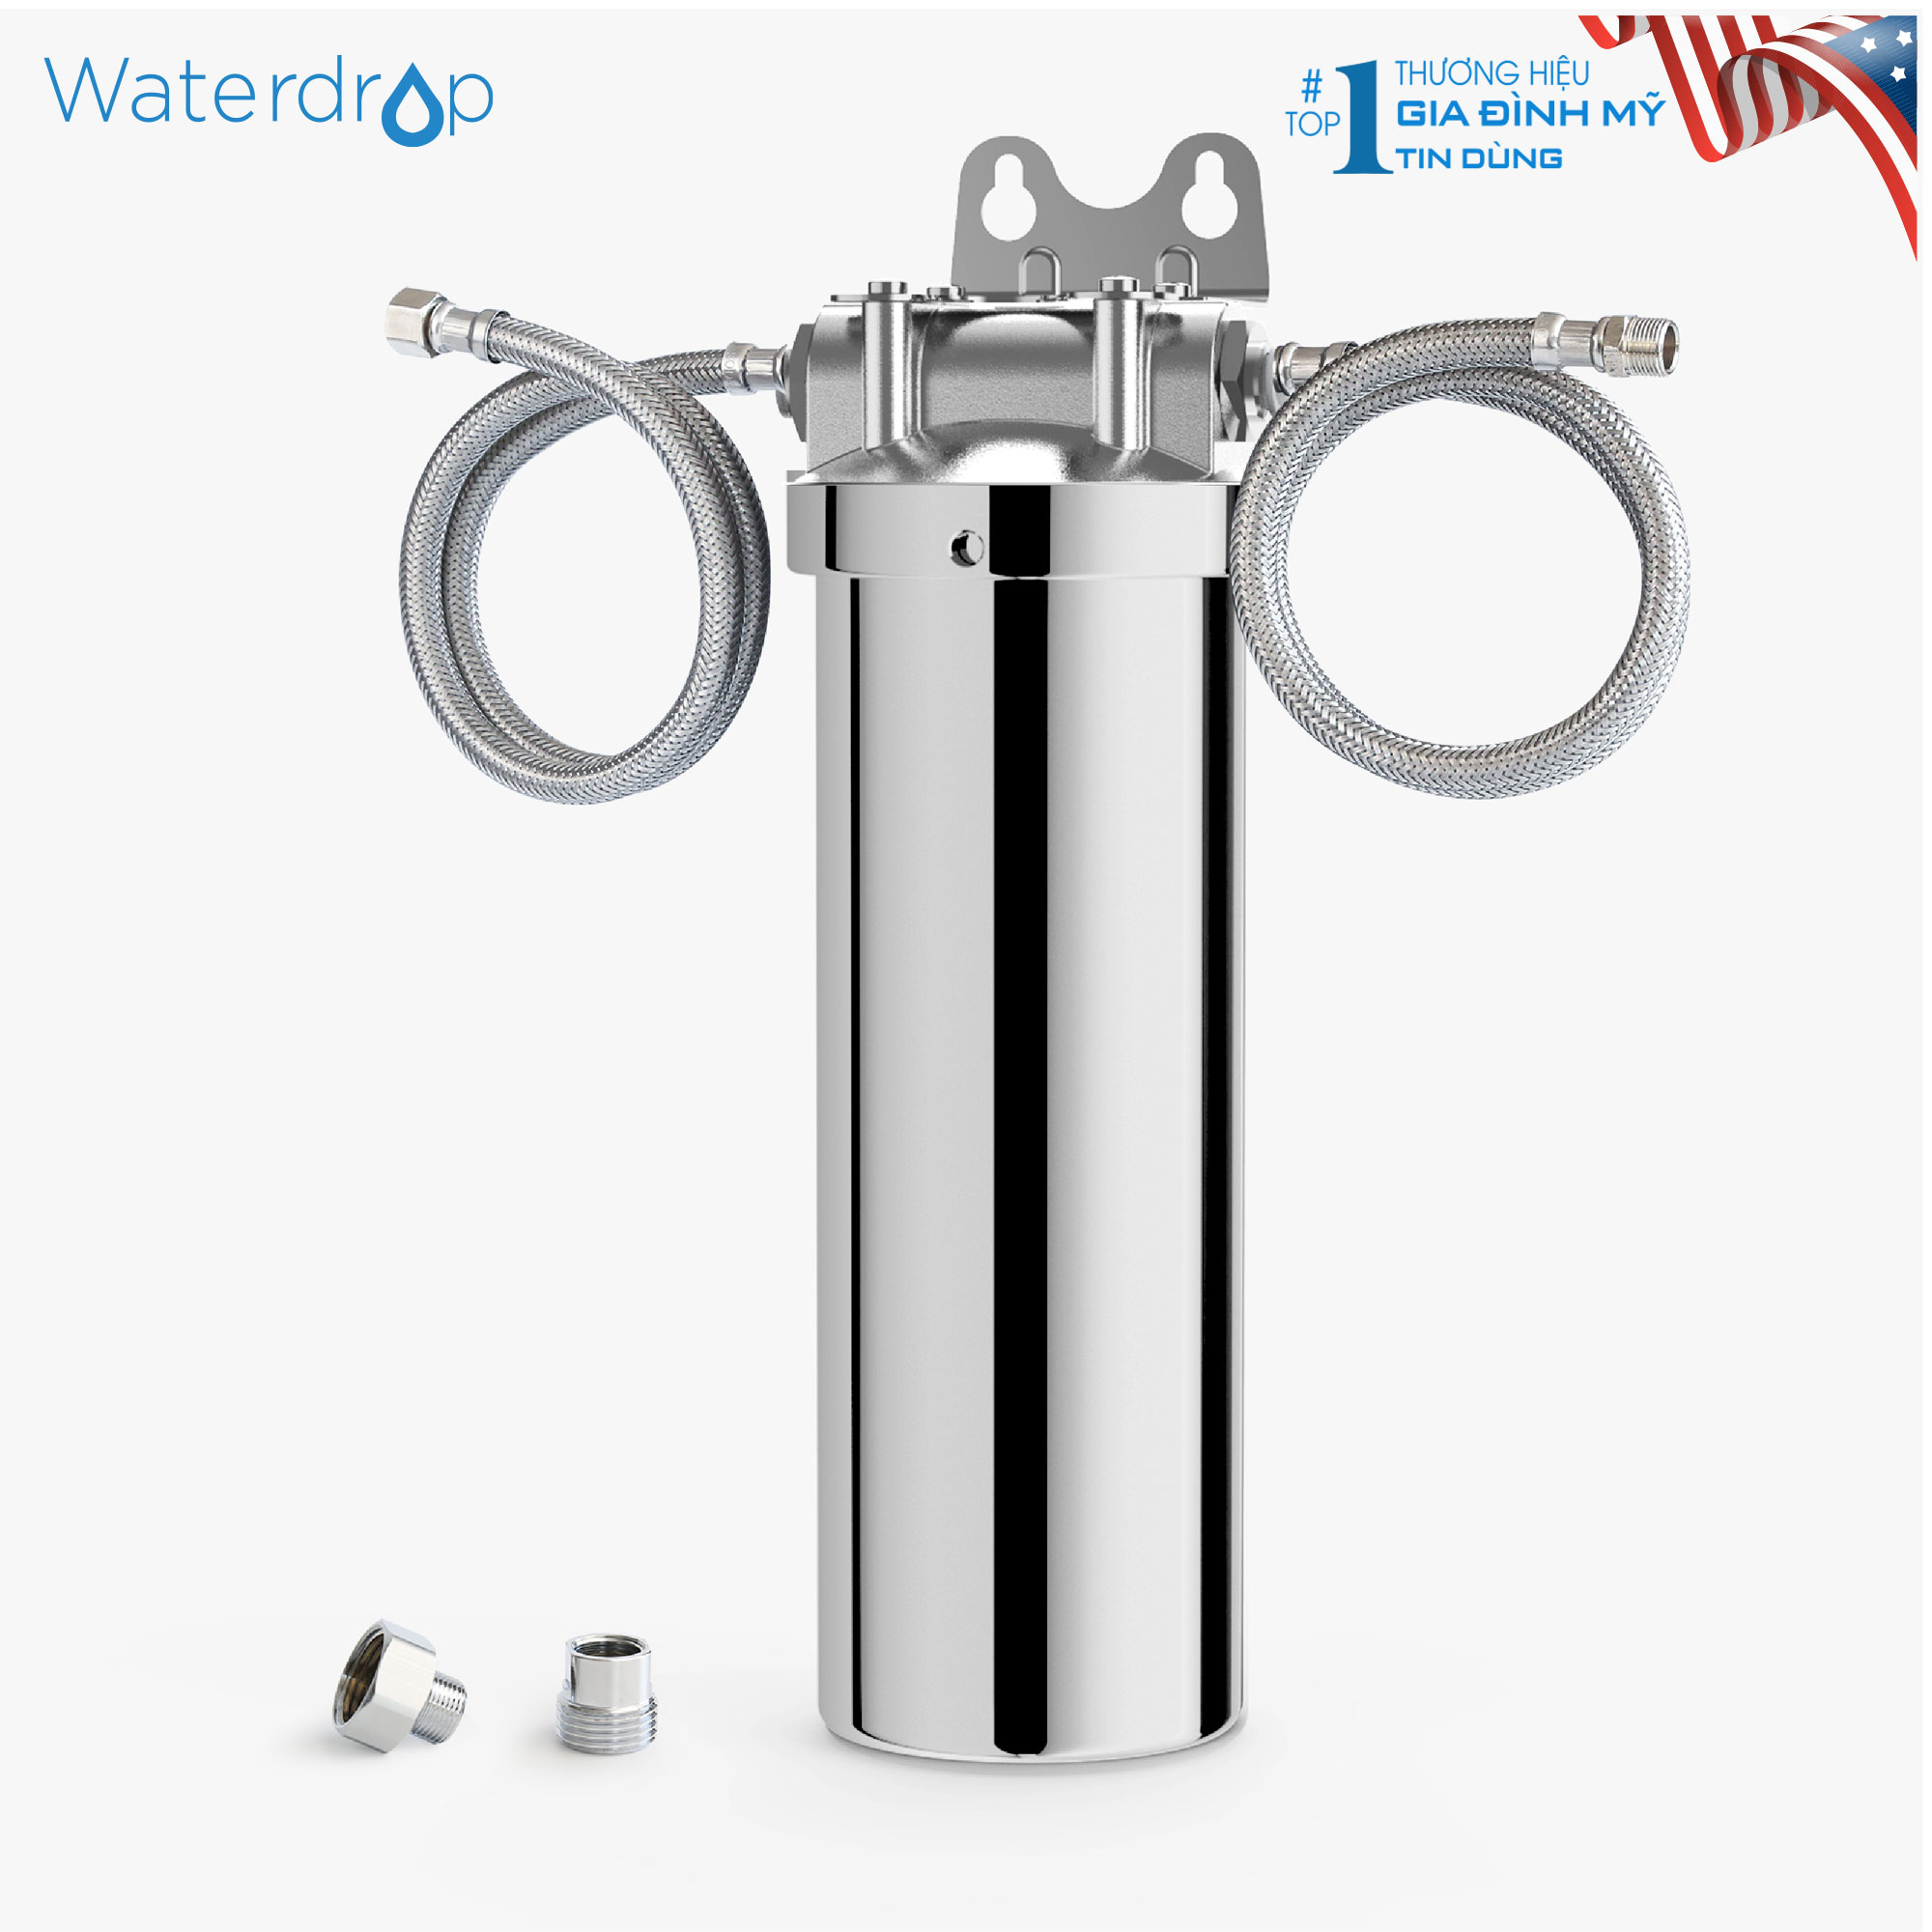 Lọc nước đơn inox bóng WD-AMS08 Waterdrop